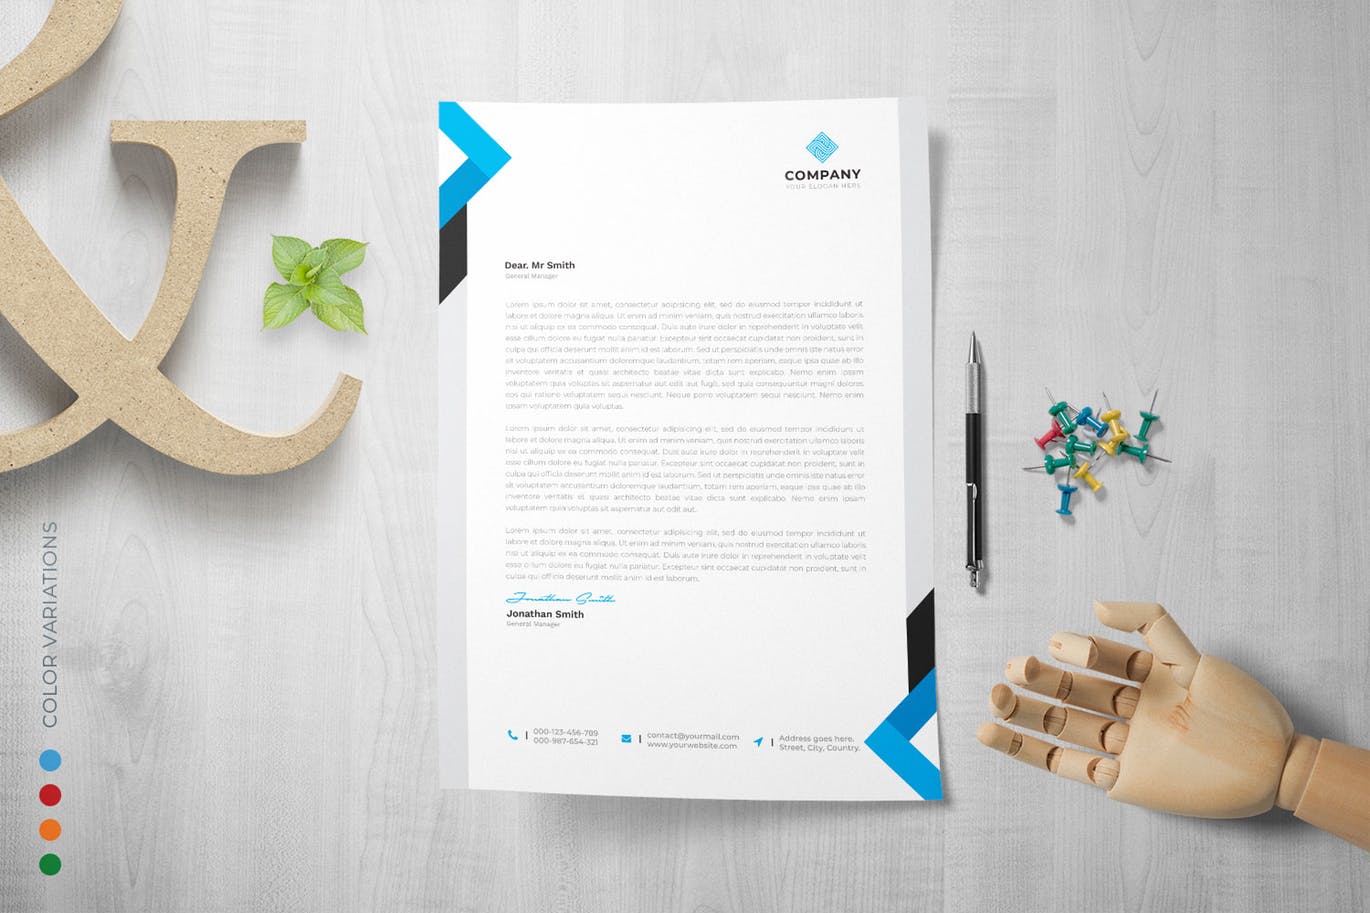 网络科技/技术开发企业信纸排版模板 Letterhead插图